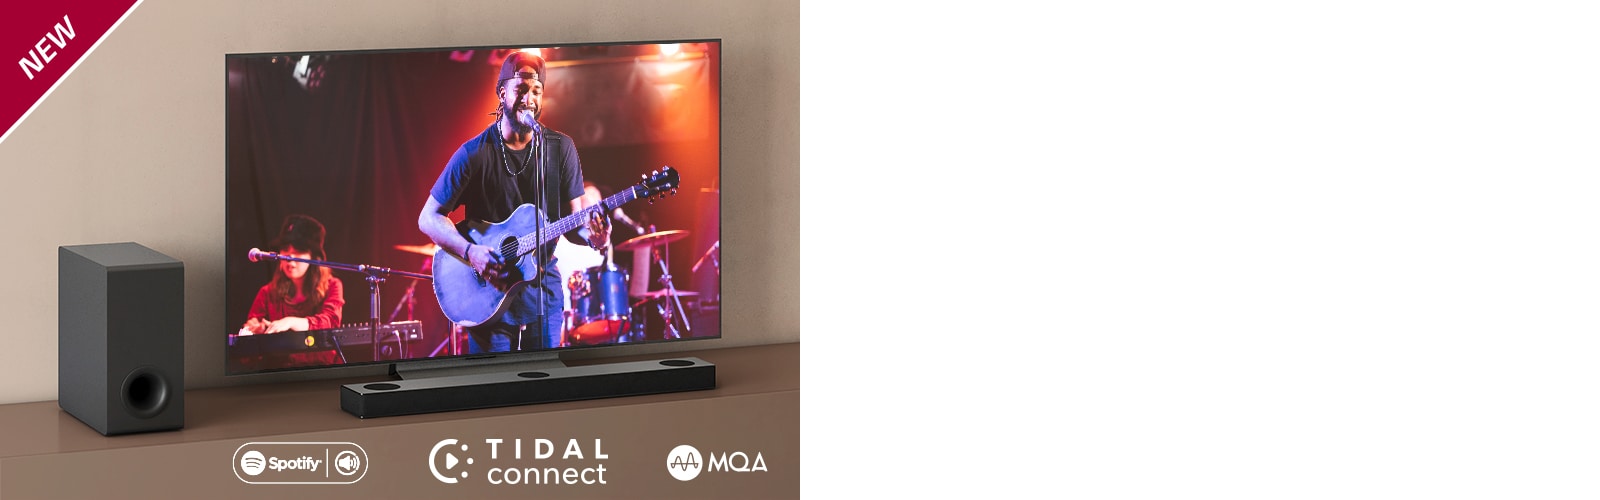 LG televizorius padėtas ant rudos lentynos, o „LG Sound Bar S75Q“ – priešais televizorių. Žemųjų dažnių garsiakalbis yra kairėje televizoriaus pusėje. Televizoriuje rodoma koncerto scena. Viršutiniame kairiajame kampe parodytas ženklas NEW.